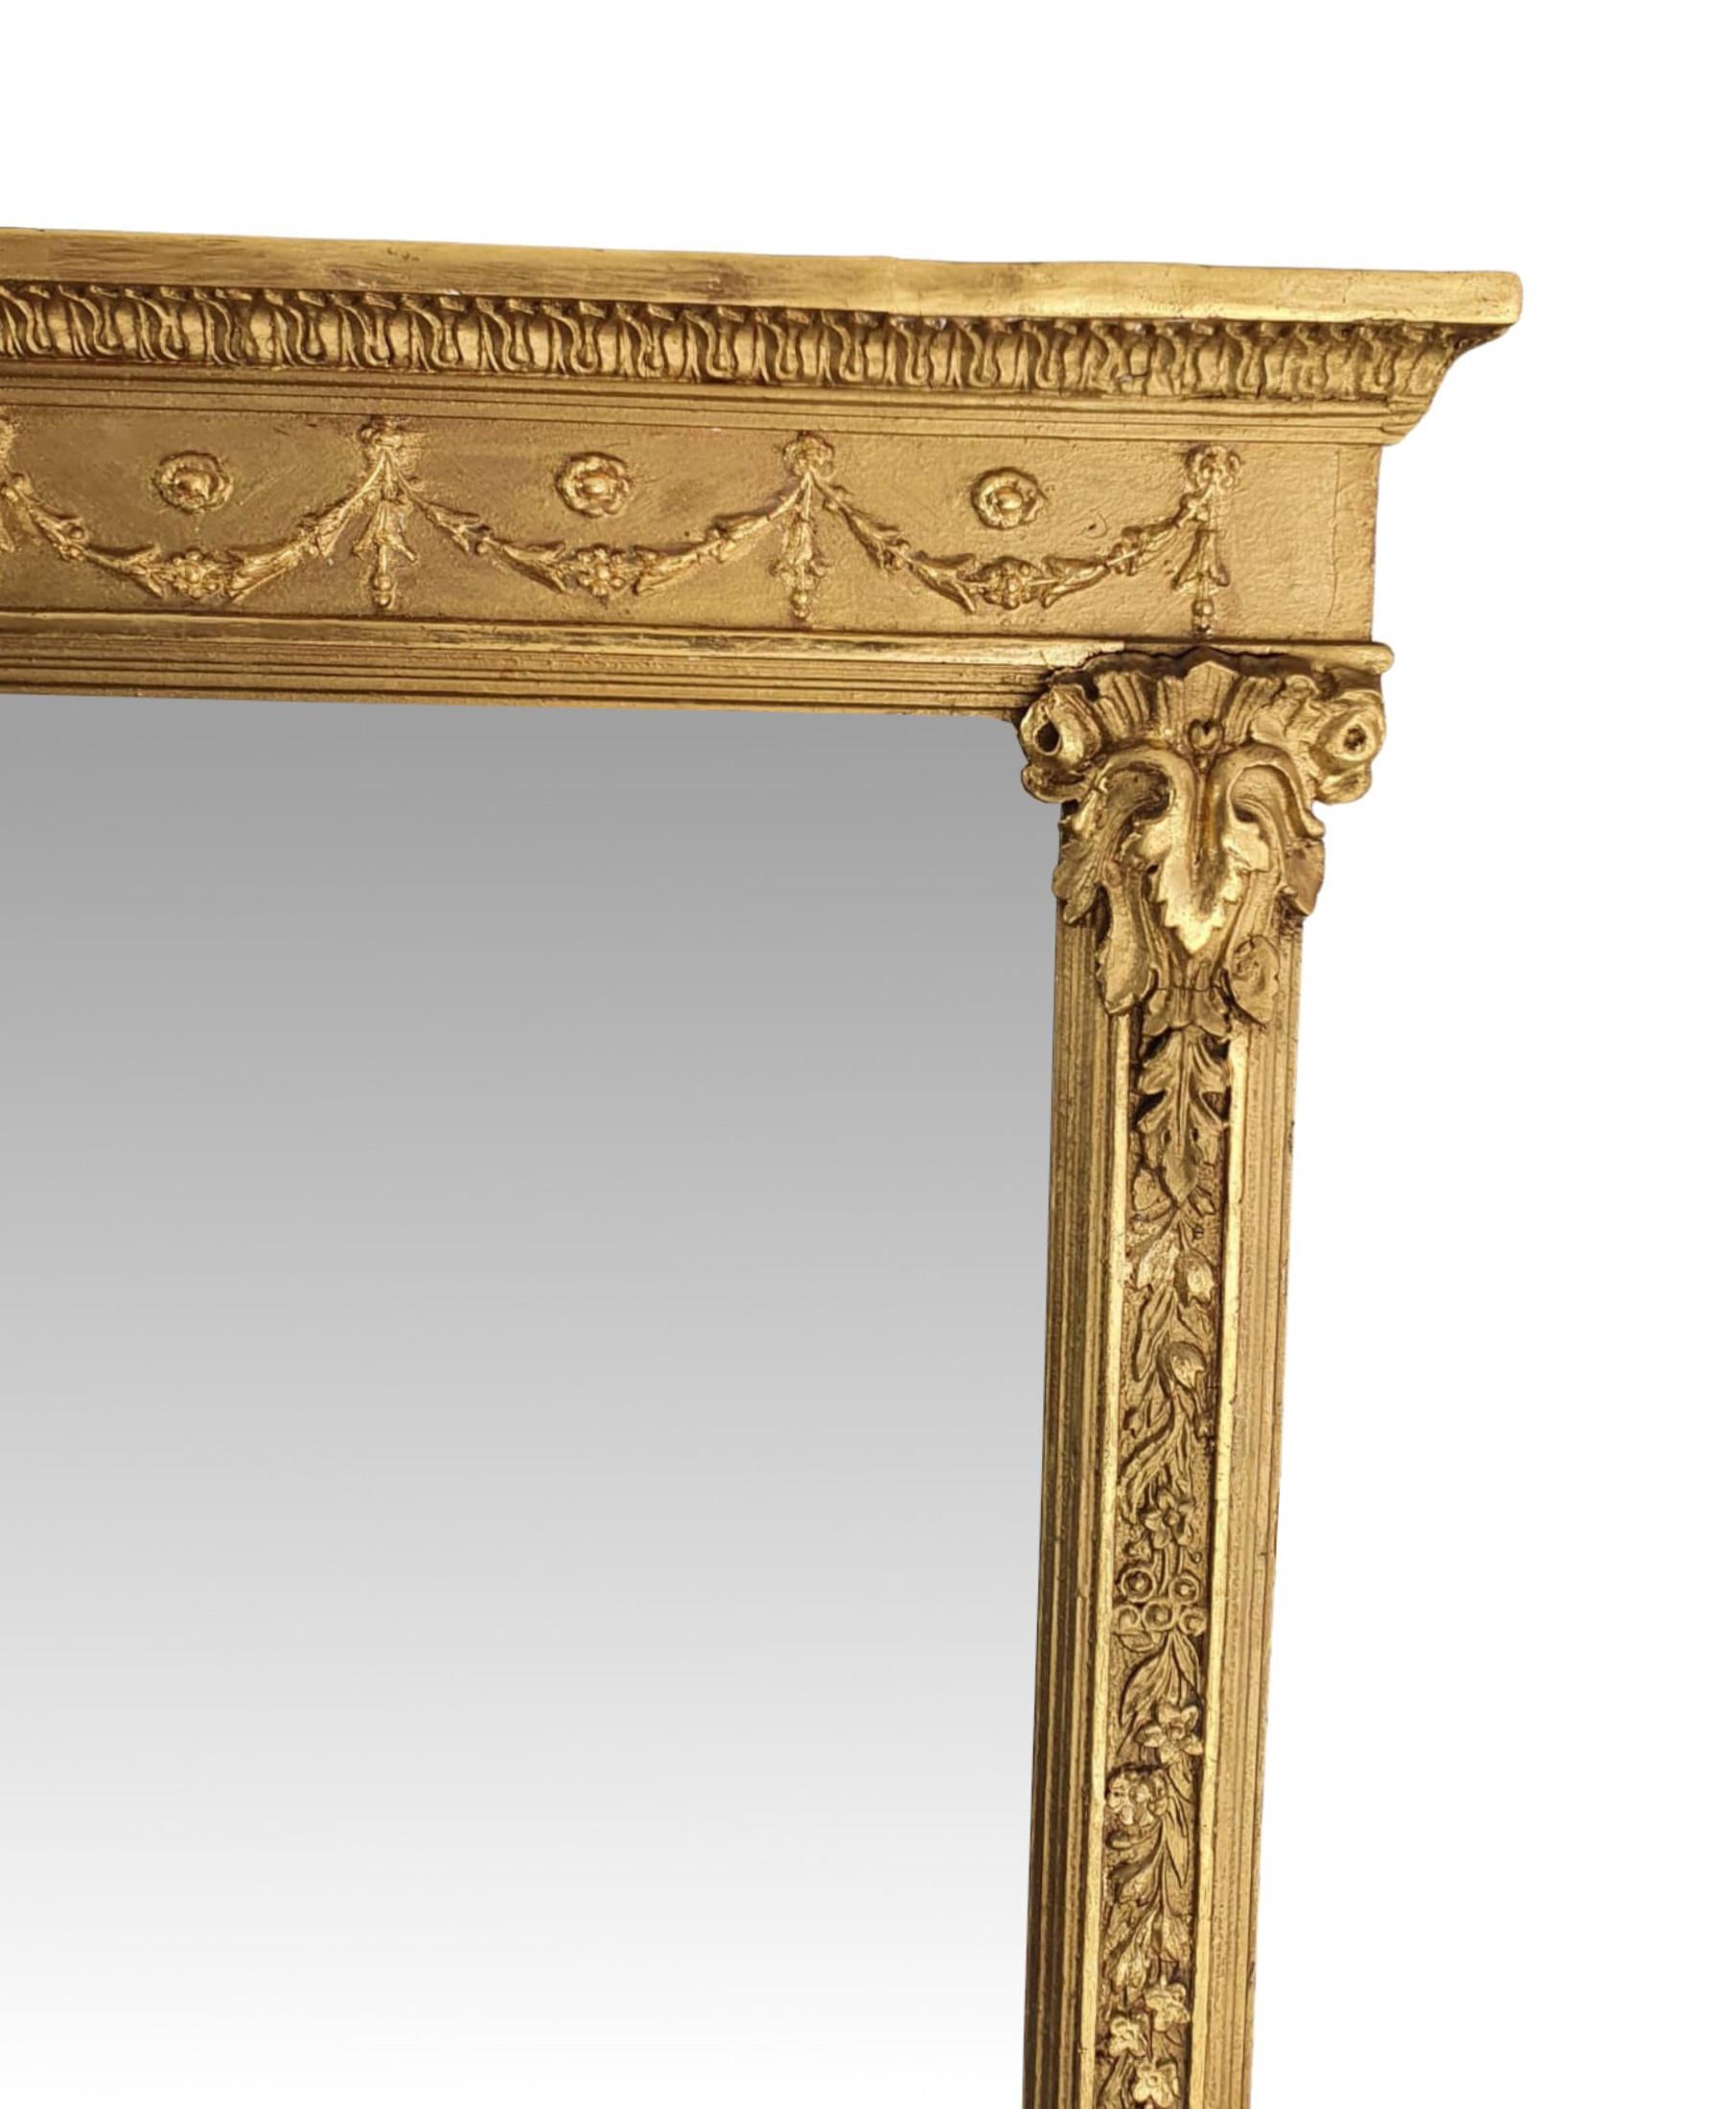 Eine fabelhafte 19. Jahrhundert vergoldet Mantel Spiegel in der Art von Adams. Die rechteckige Spiegelglasplatte befindet sich in einem wunderschön handgeschnitzten und geformten Rahmen aus Goldholz. Über dem Fries mit klassizistischen Motiven,